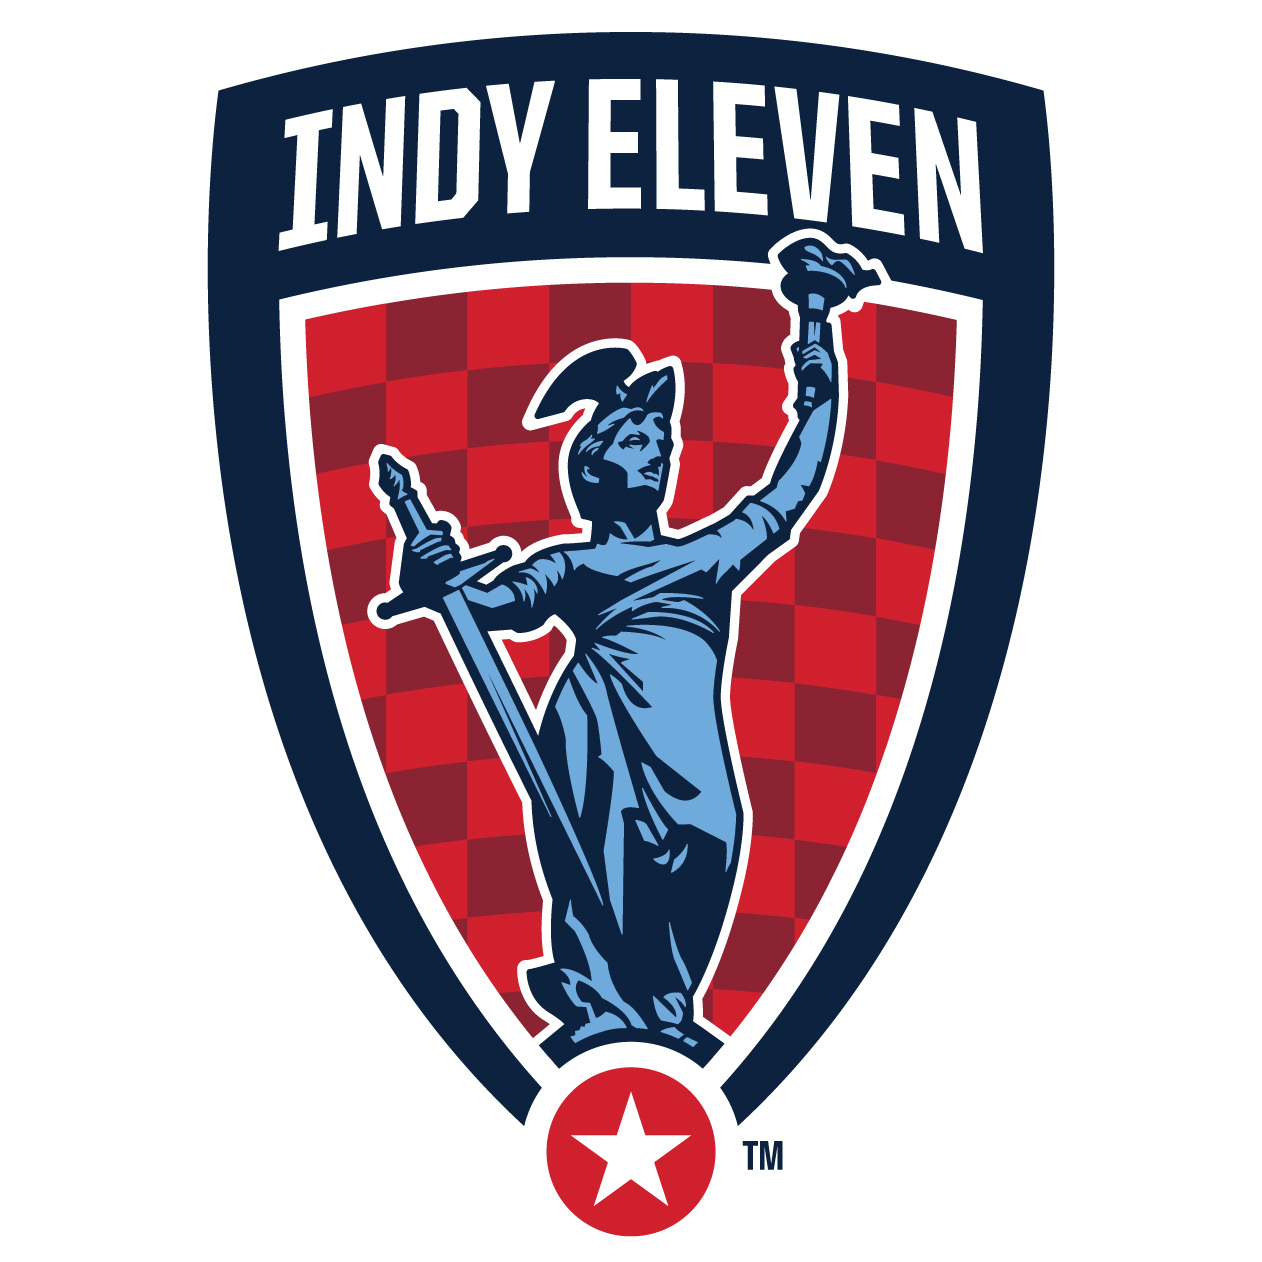 Indy Eleven sponsor logo